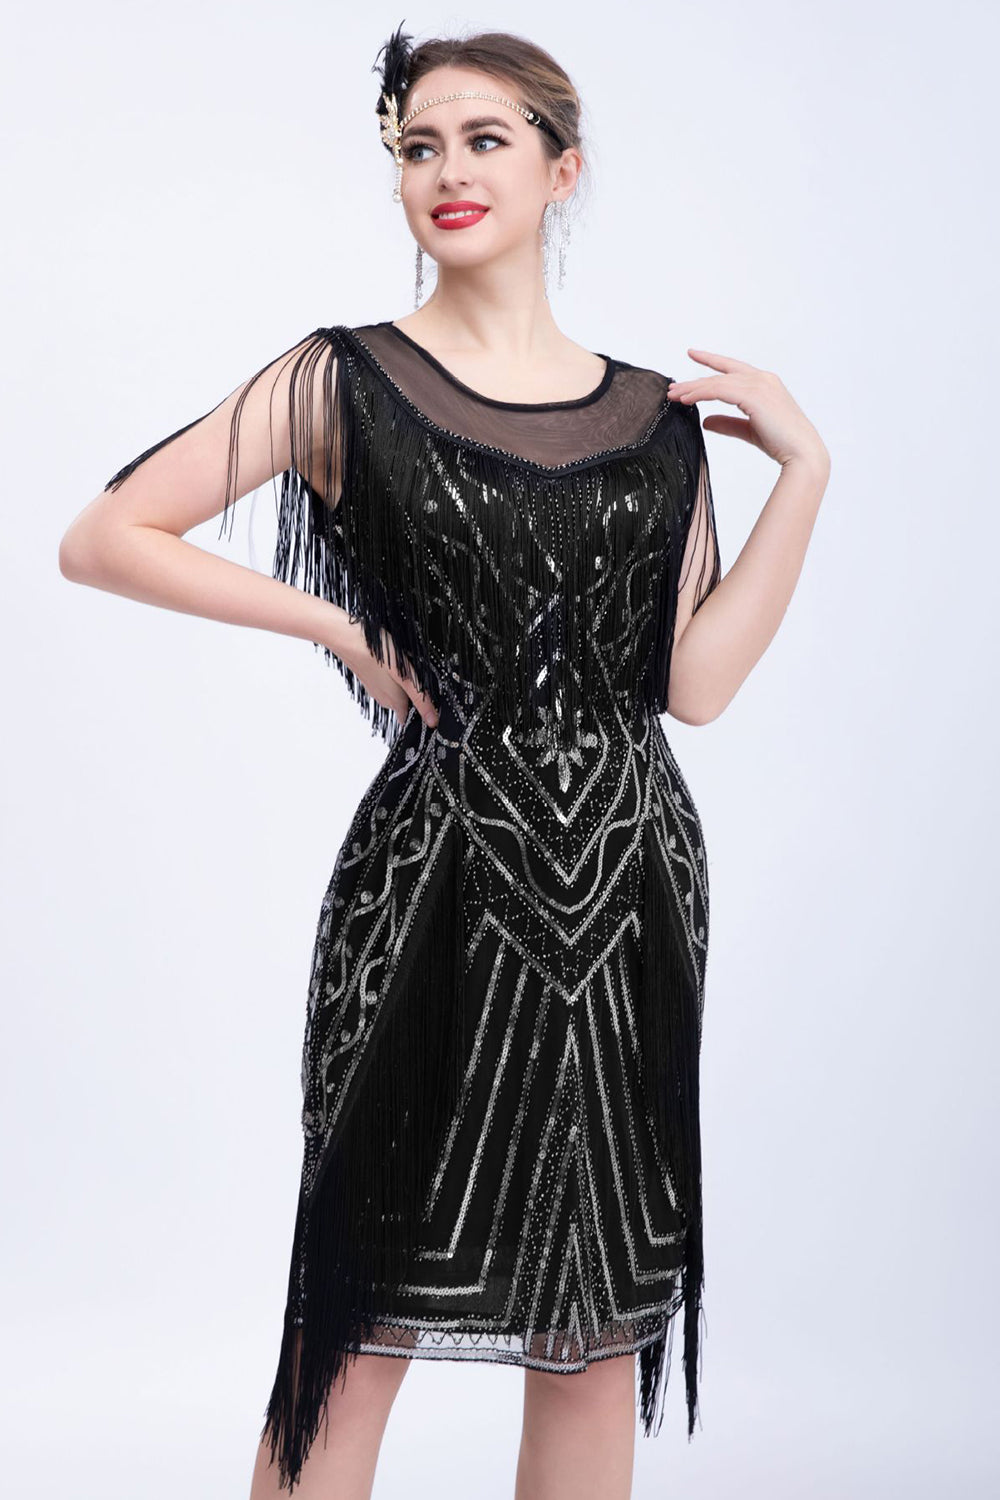 Black Glitter Sequins Flapper Dress with Fringes